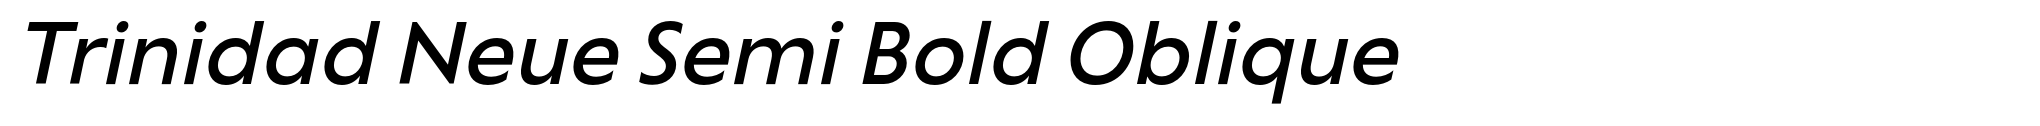 Trinidad Neue Semi Bold Oblique image